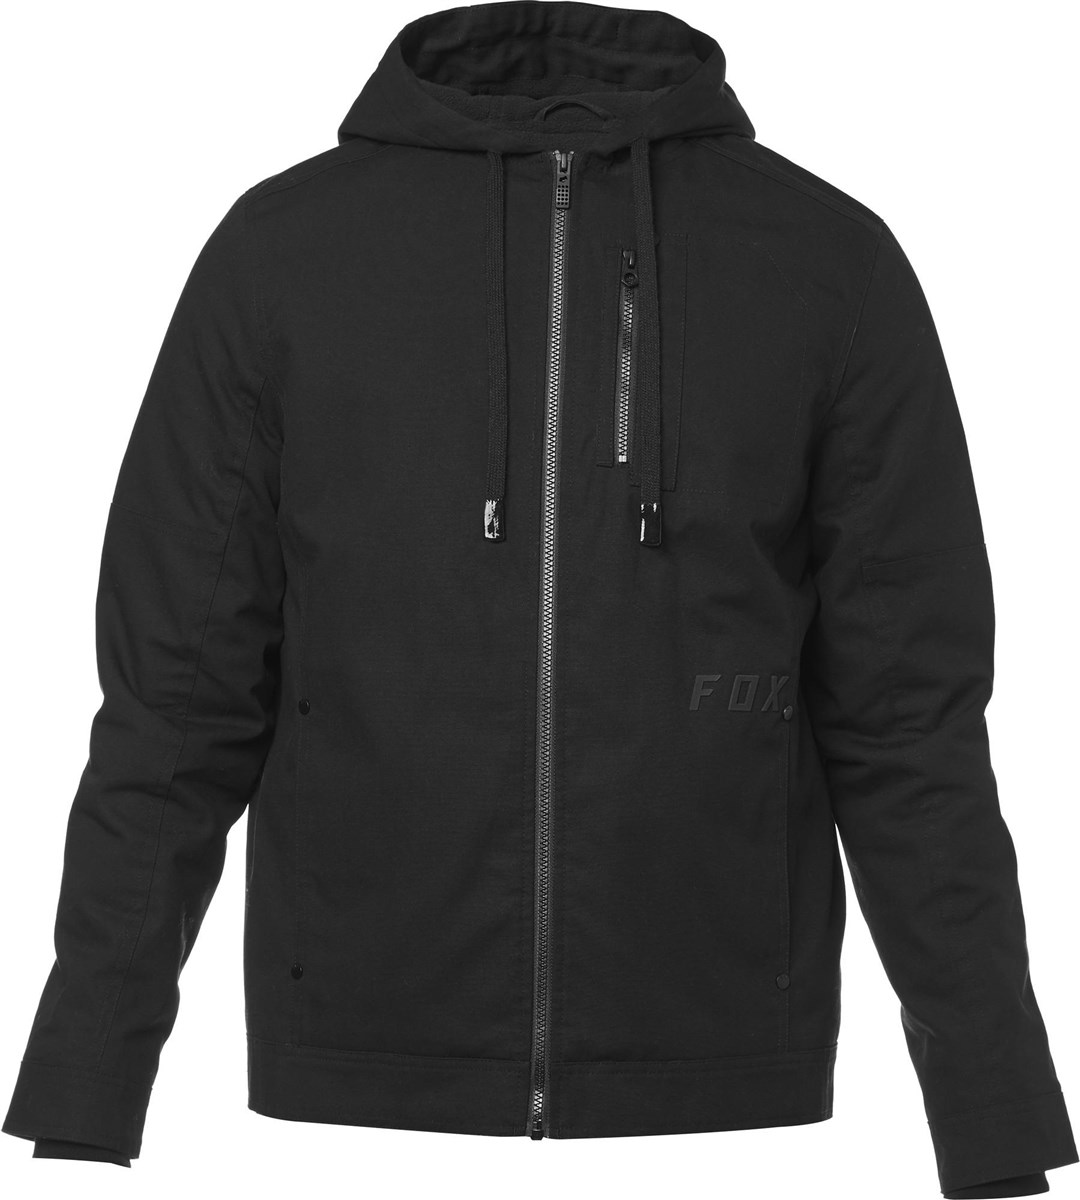 Fox Clothing Mercer Jacket product image